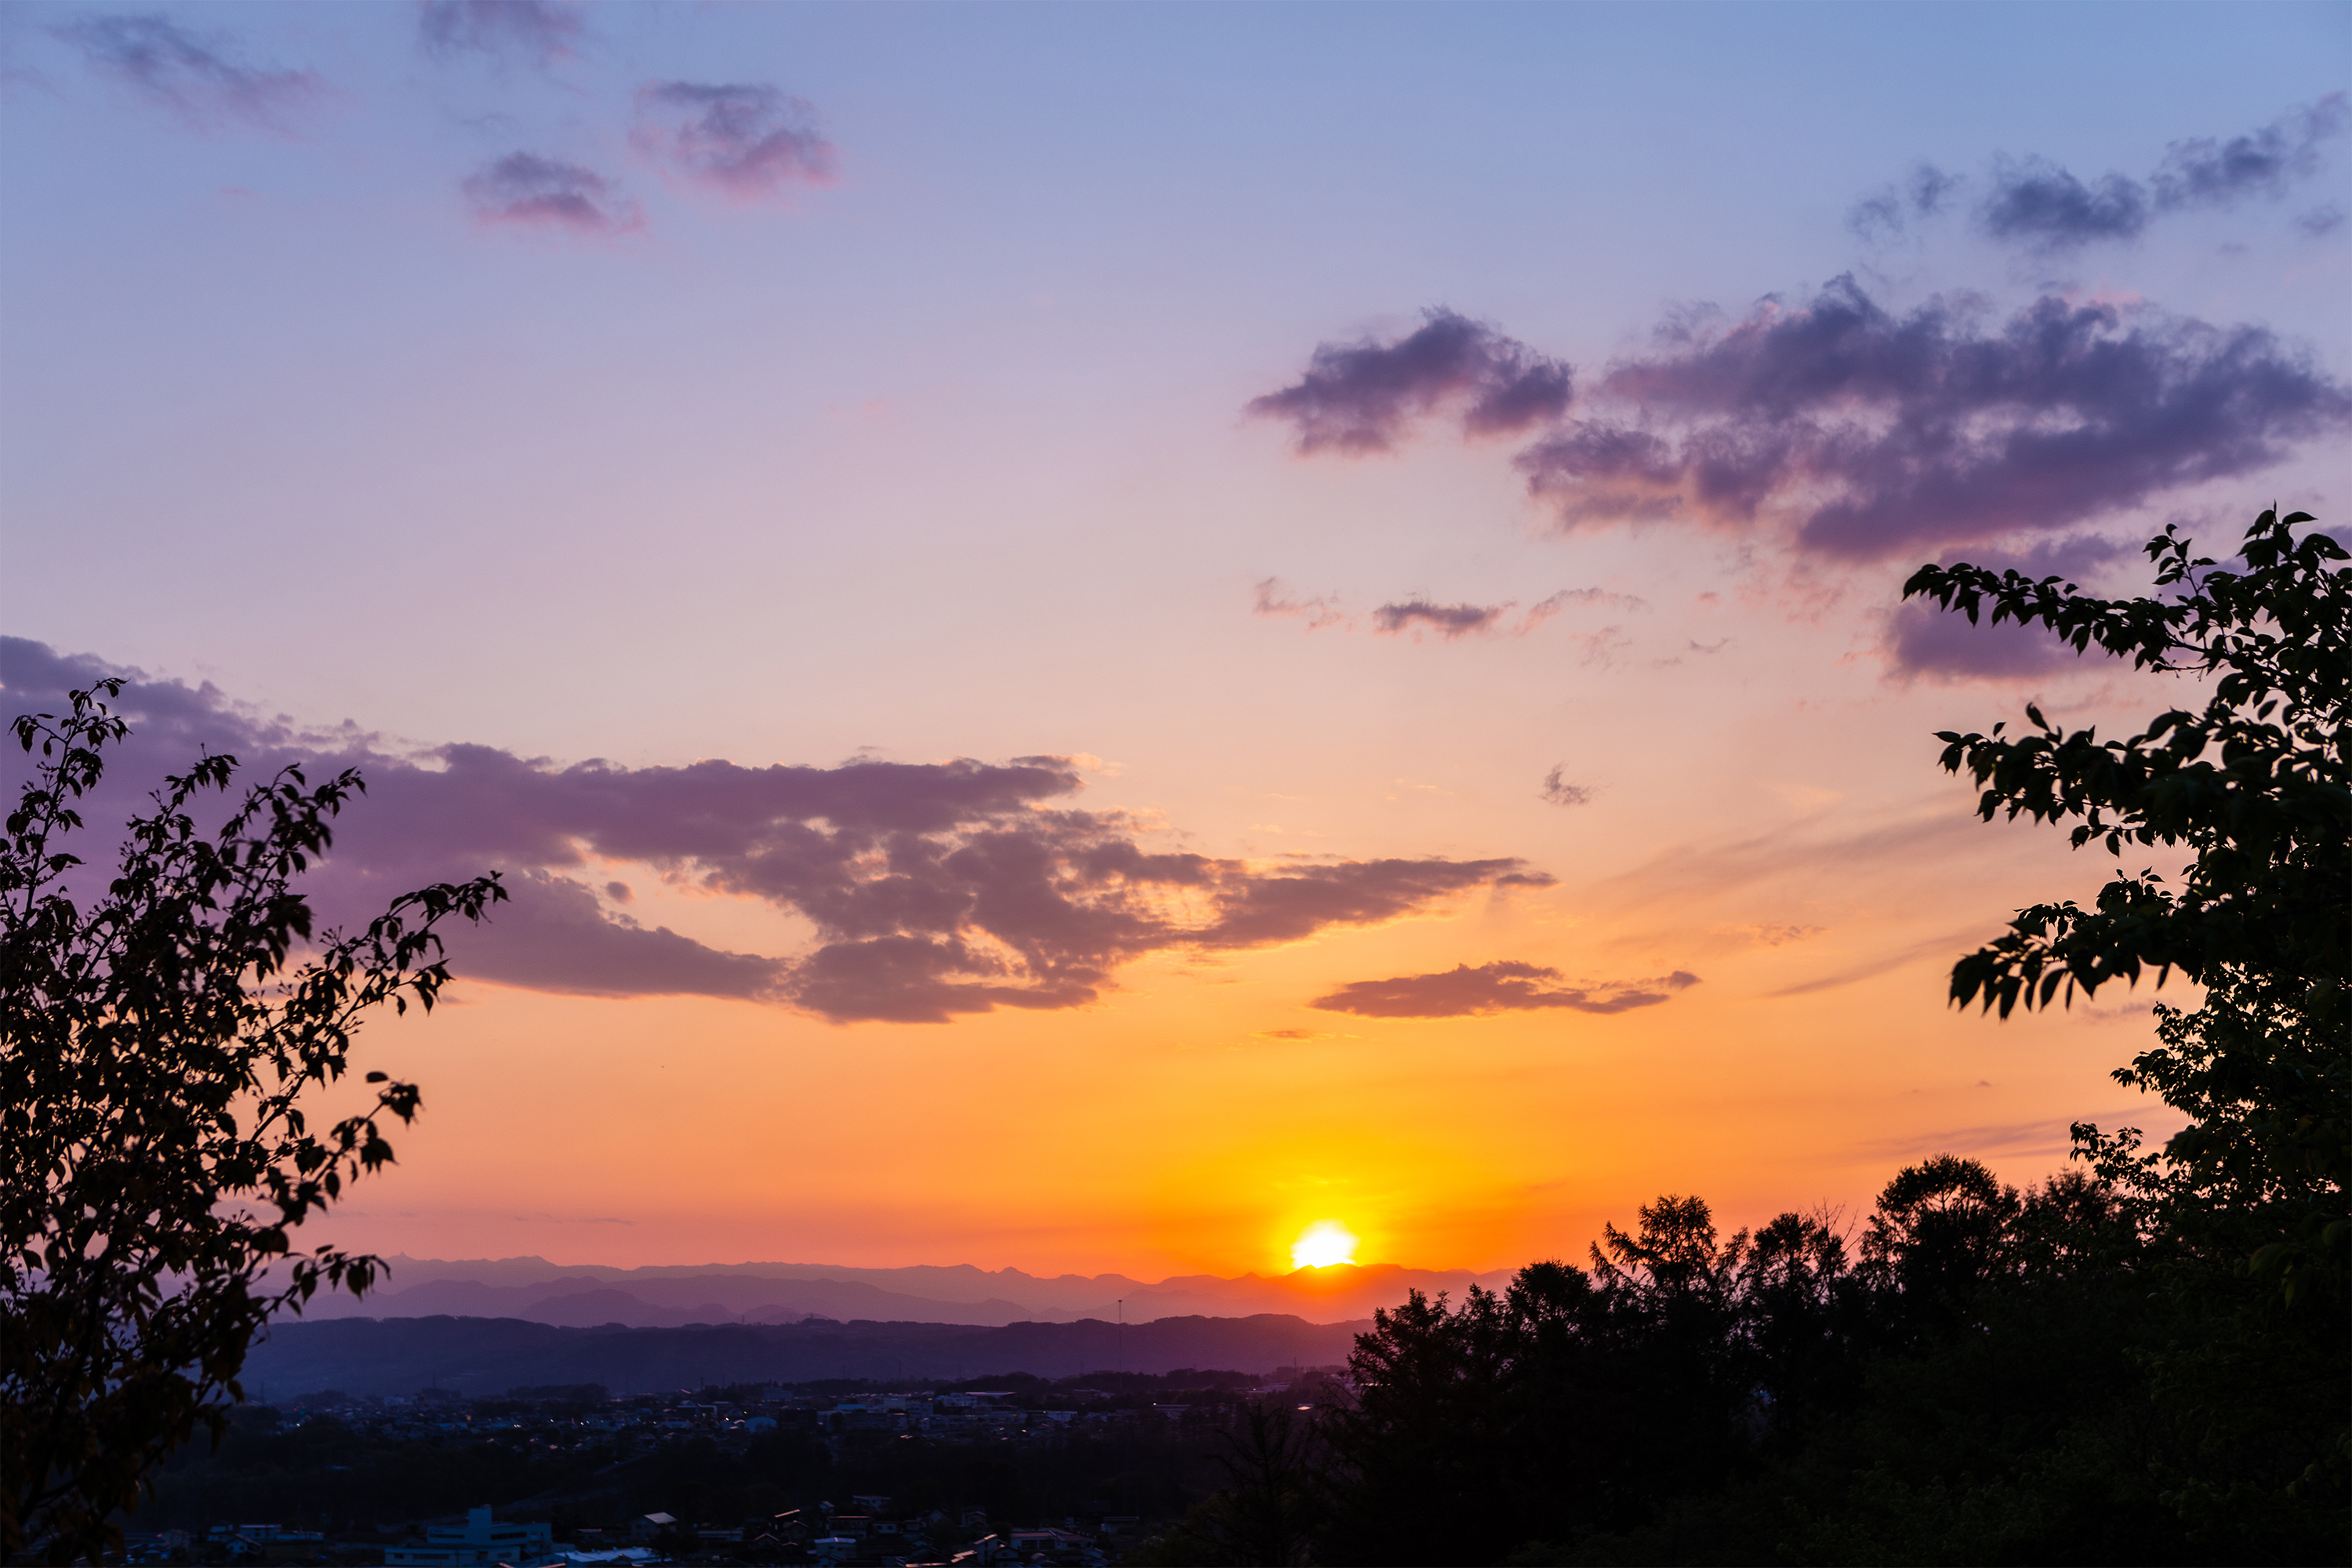 木の陰と山に沈む夕日 夕焼け 無料の高画質フリー写真素材 イメージズラボ